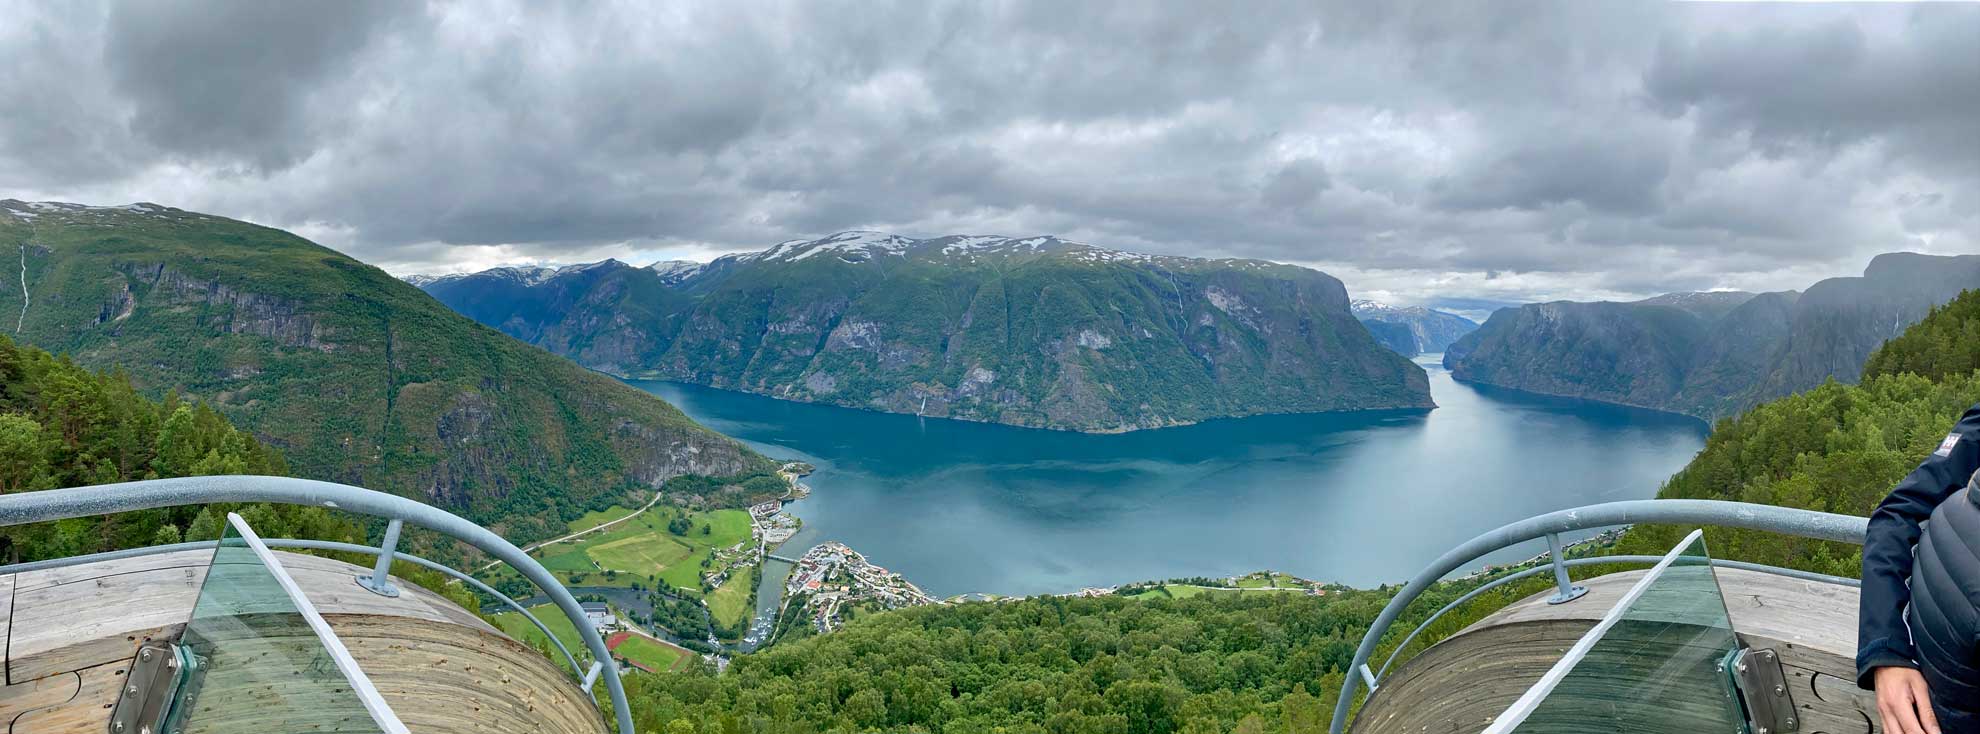 Tolles Panorama an der Aussichtsplattform Stegastein (Entstanden bei unserer Elternzeitreise in Norwegen)